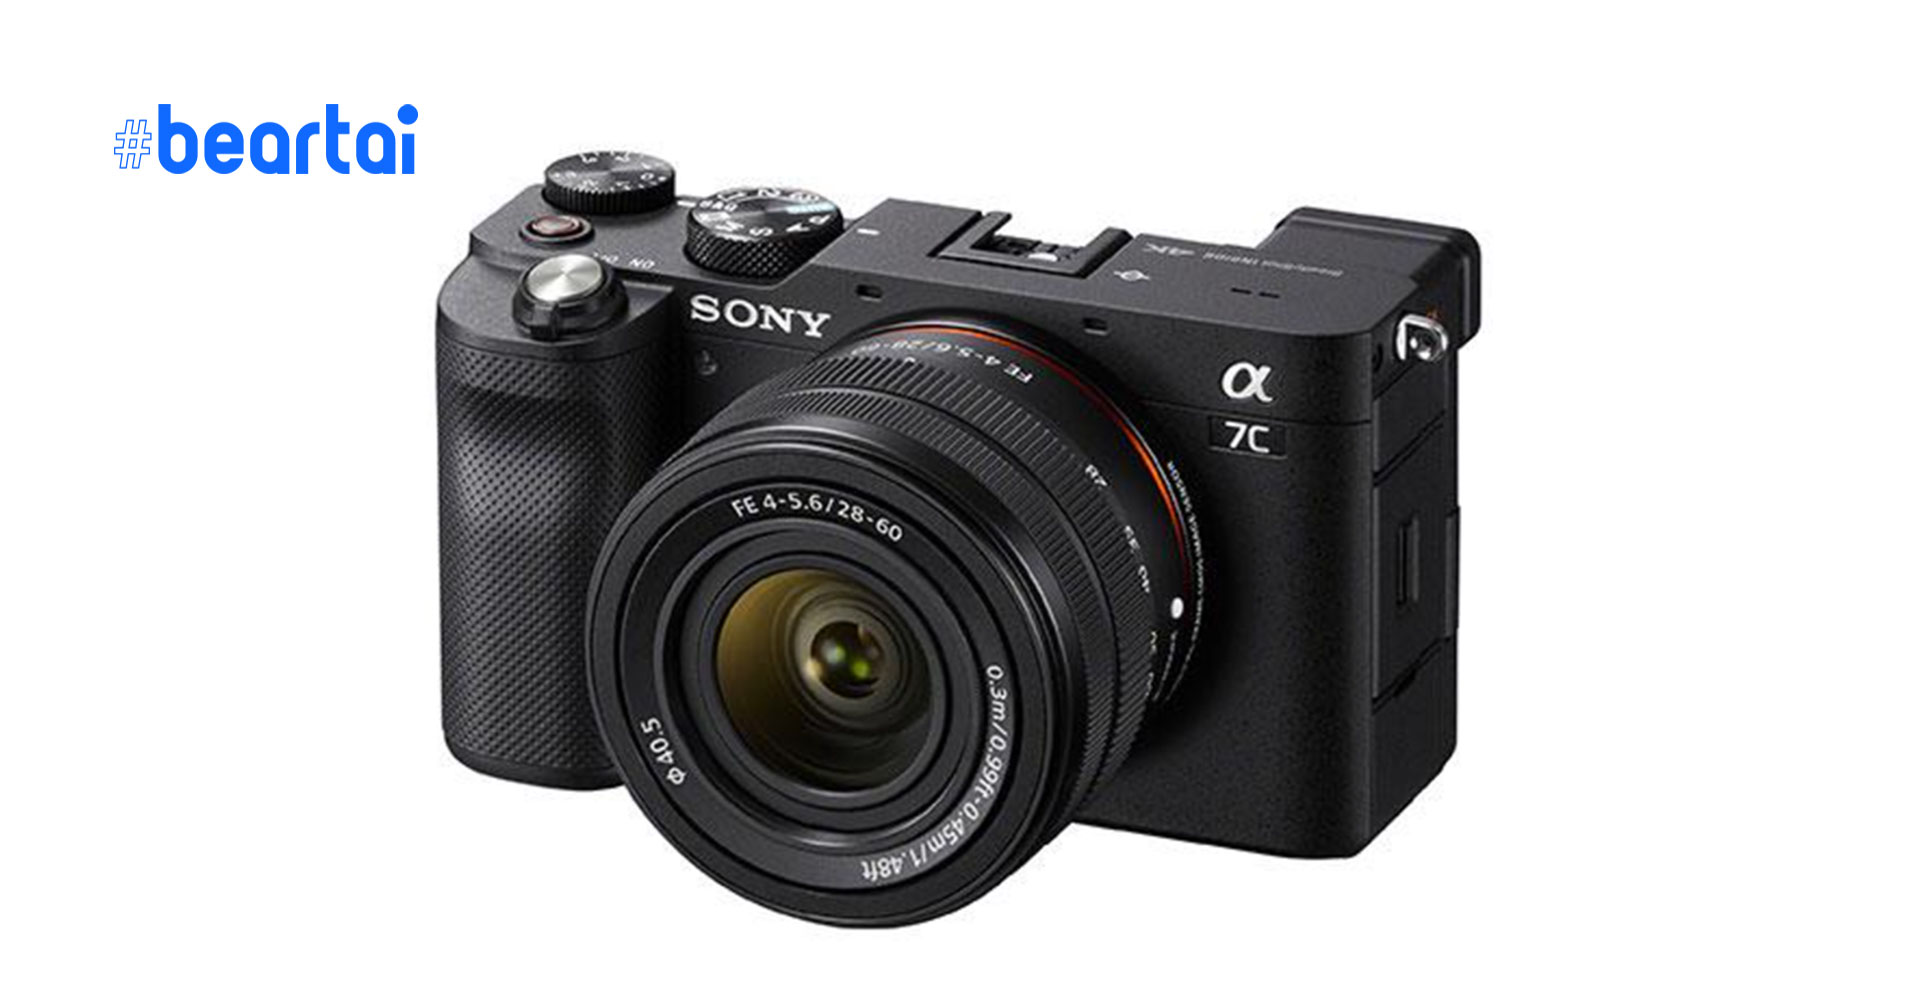 หลุดมาเต็ม ๆ กับภาพหลุดเพิ่มเติมกล้อง Sony A7c พร้อมสเปกเบื้องต้น